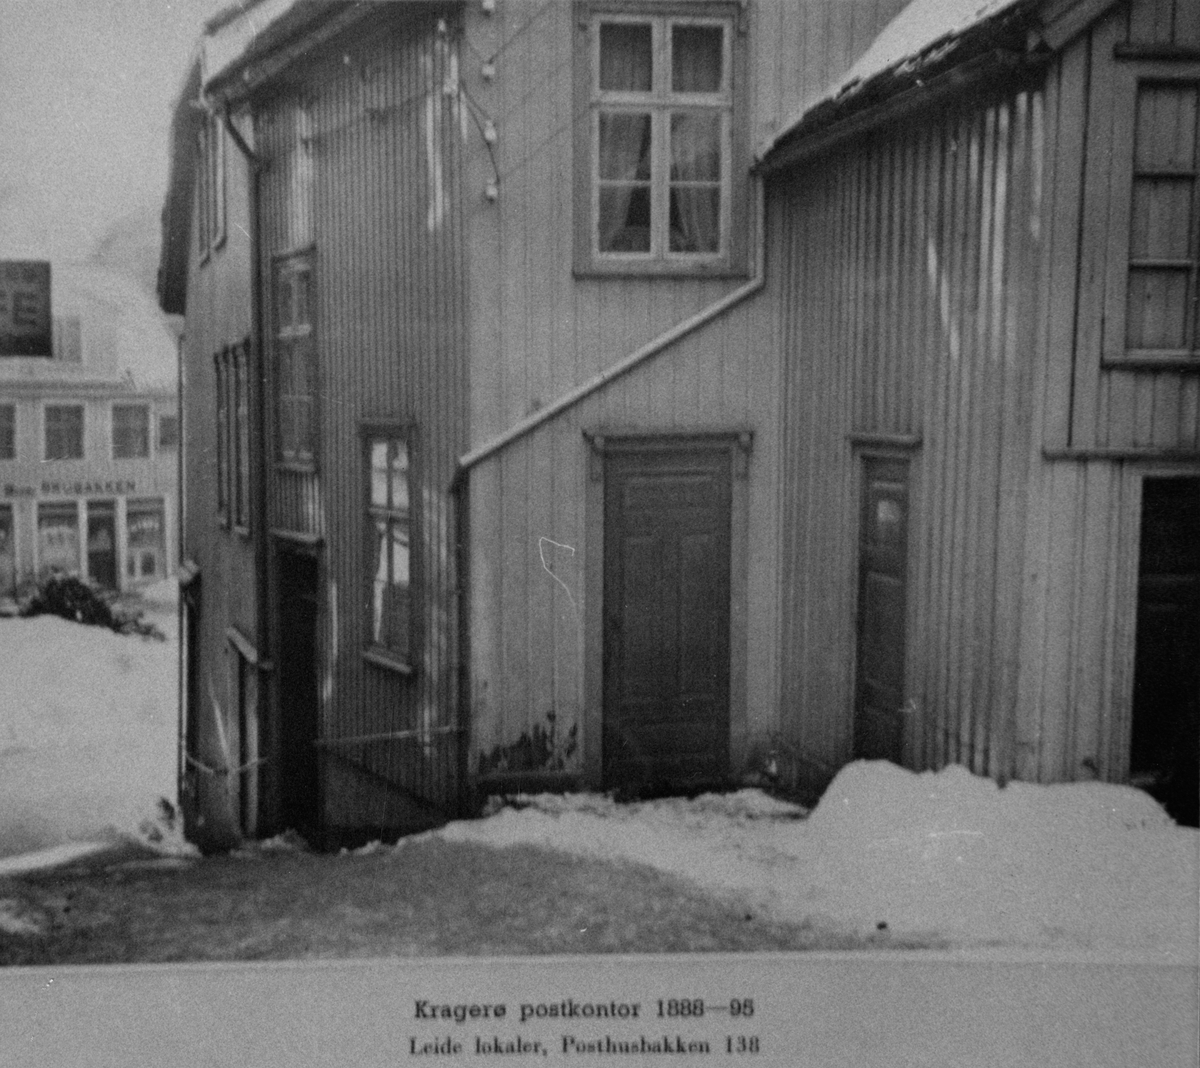 Kragerø postkontor 188-1895, leide lokaler i posthusbakken 138. Huset hvor urmaker Arvid Hanssen butikk var i mange år. Huset brant ned 19 April 2009. Det er nå bygget opp igjen. Blomsterbutikken Ch. Hiis er nå i lokalene.